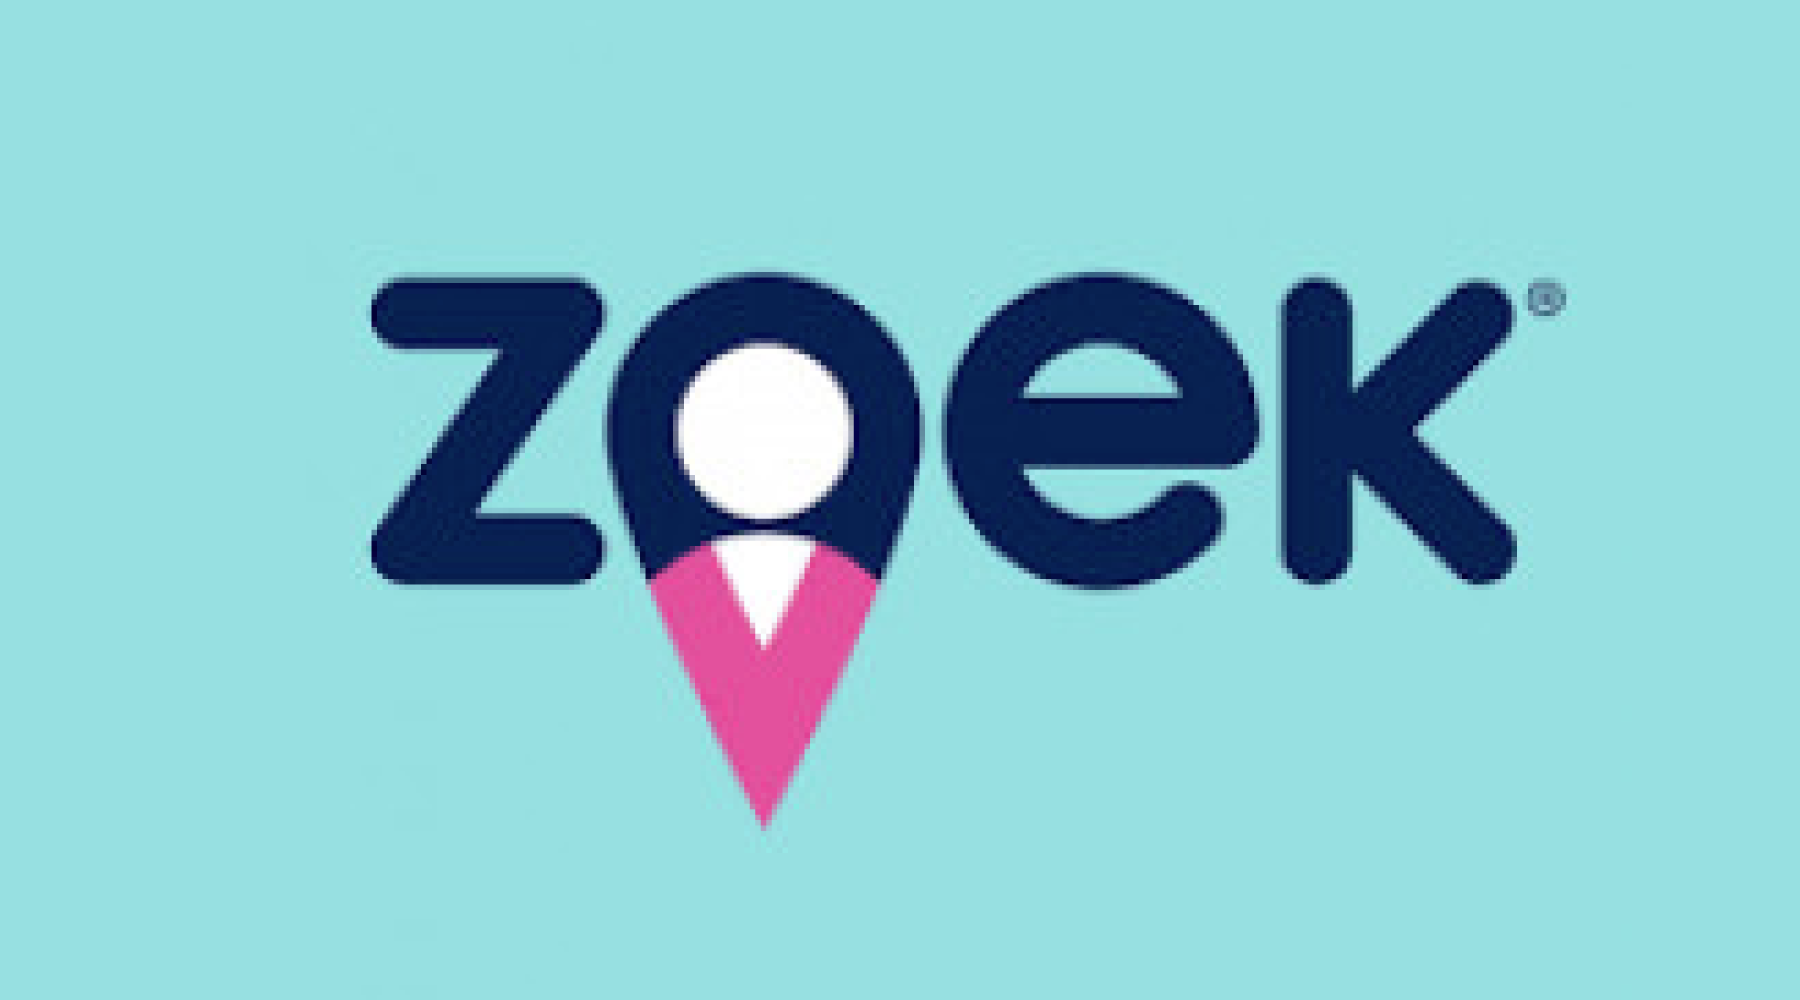 Zoek | Recruitly